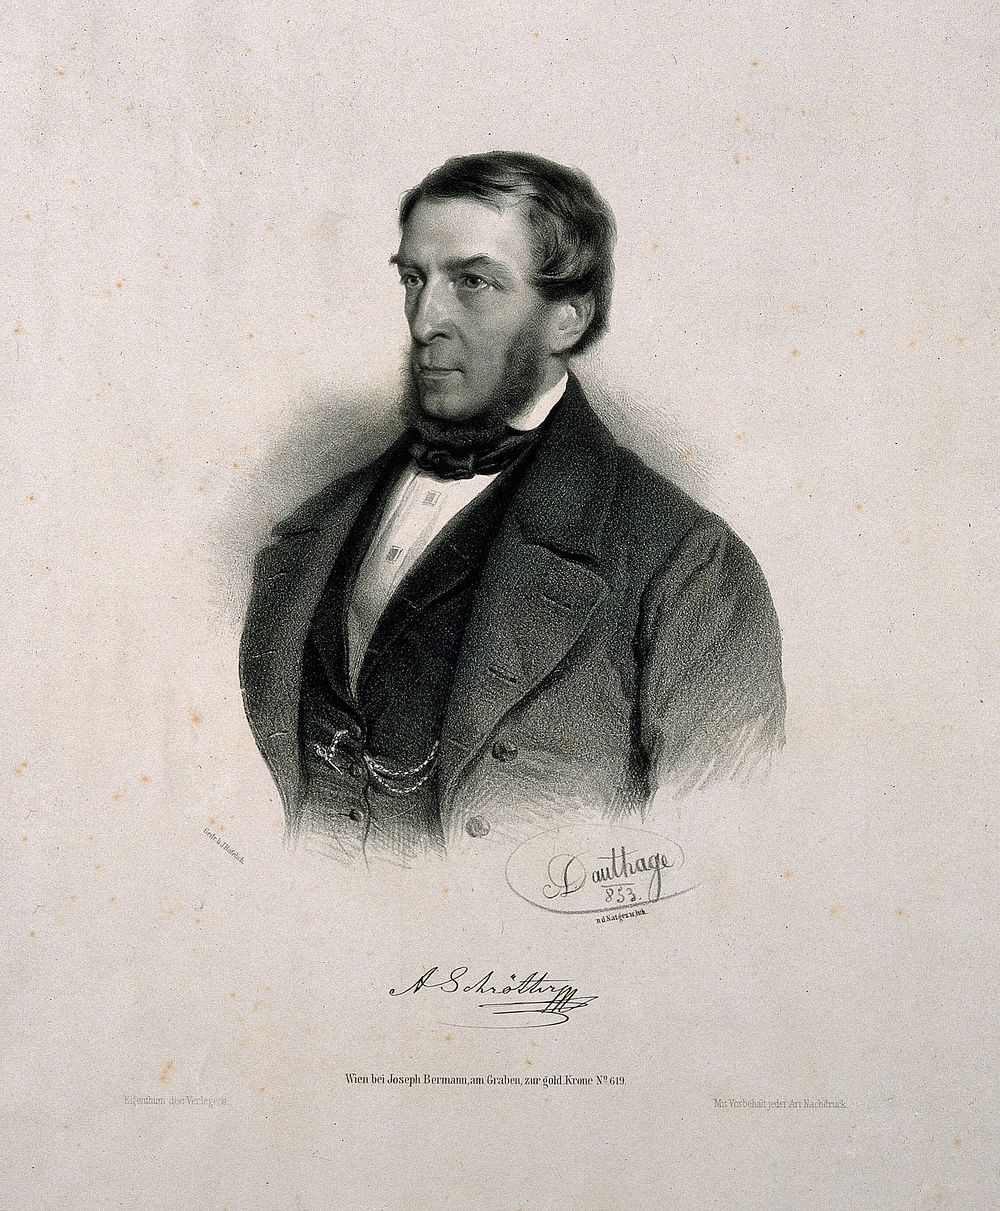 Anton Schrötter, Ritter von Kristelli. Lithograph by A. Dauthage, 1853.